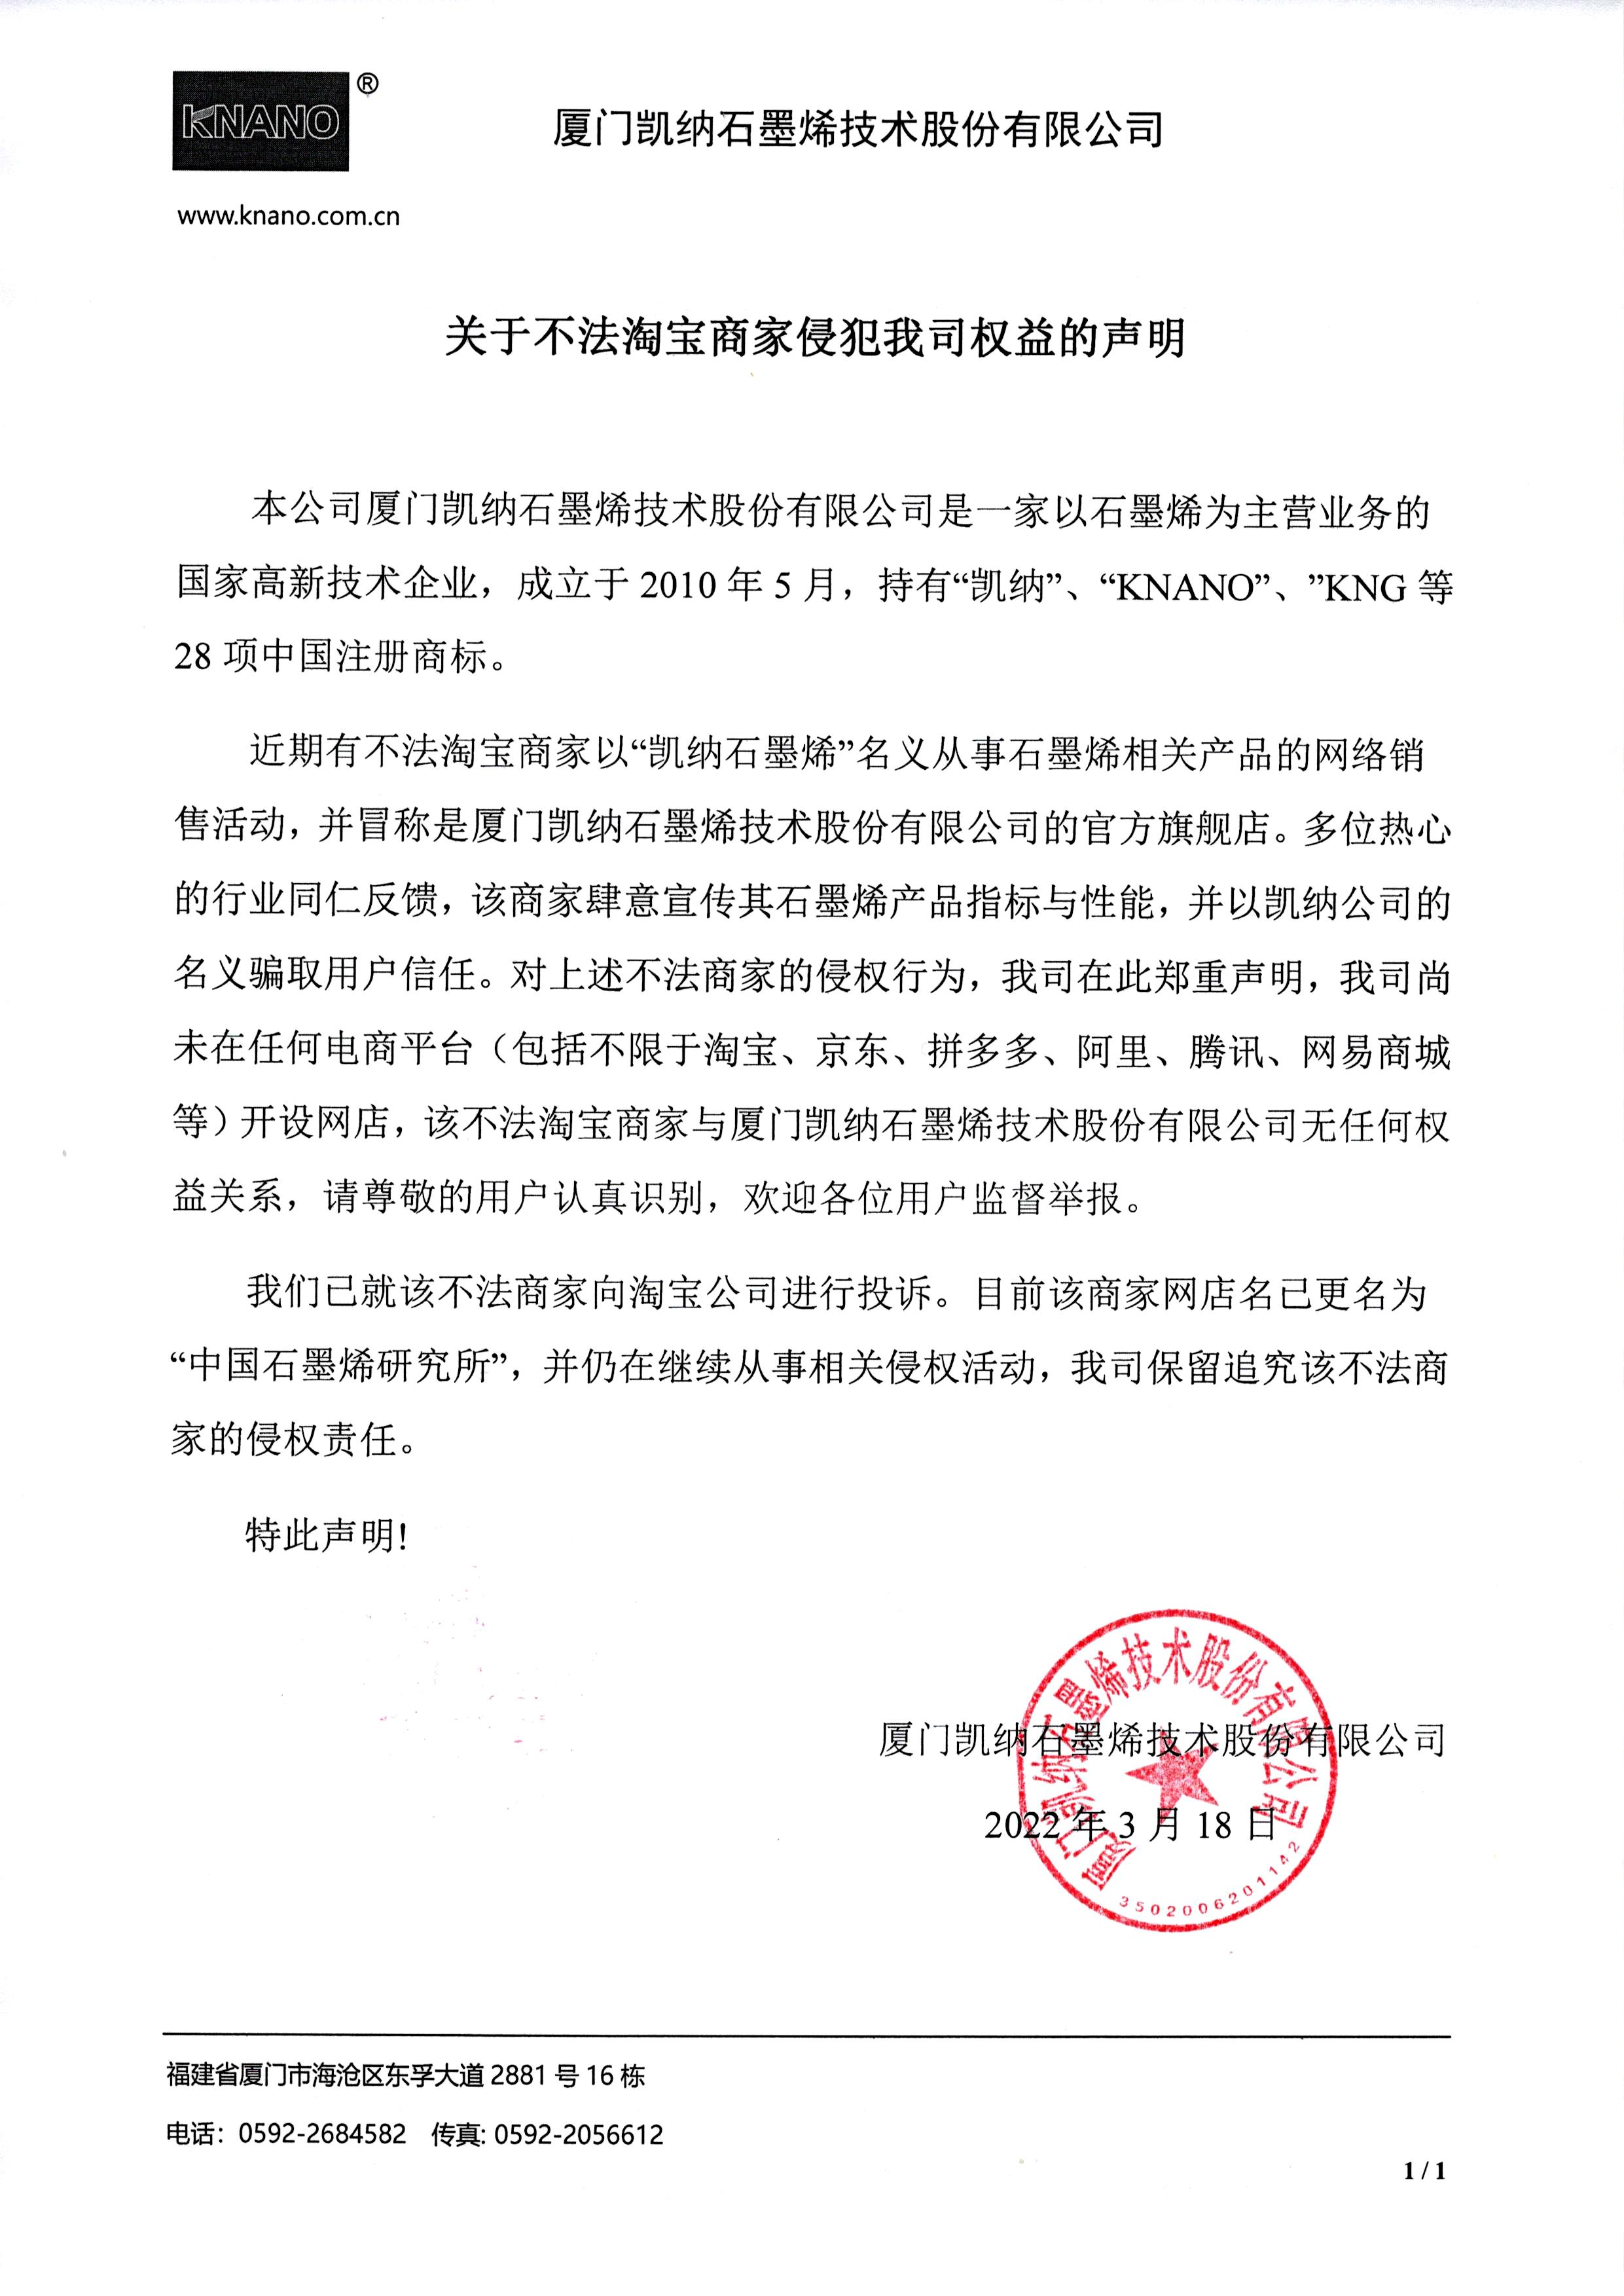 厦门广东会在线石墨烯技术股份有限公司严正声明！